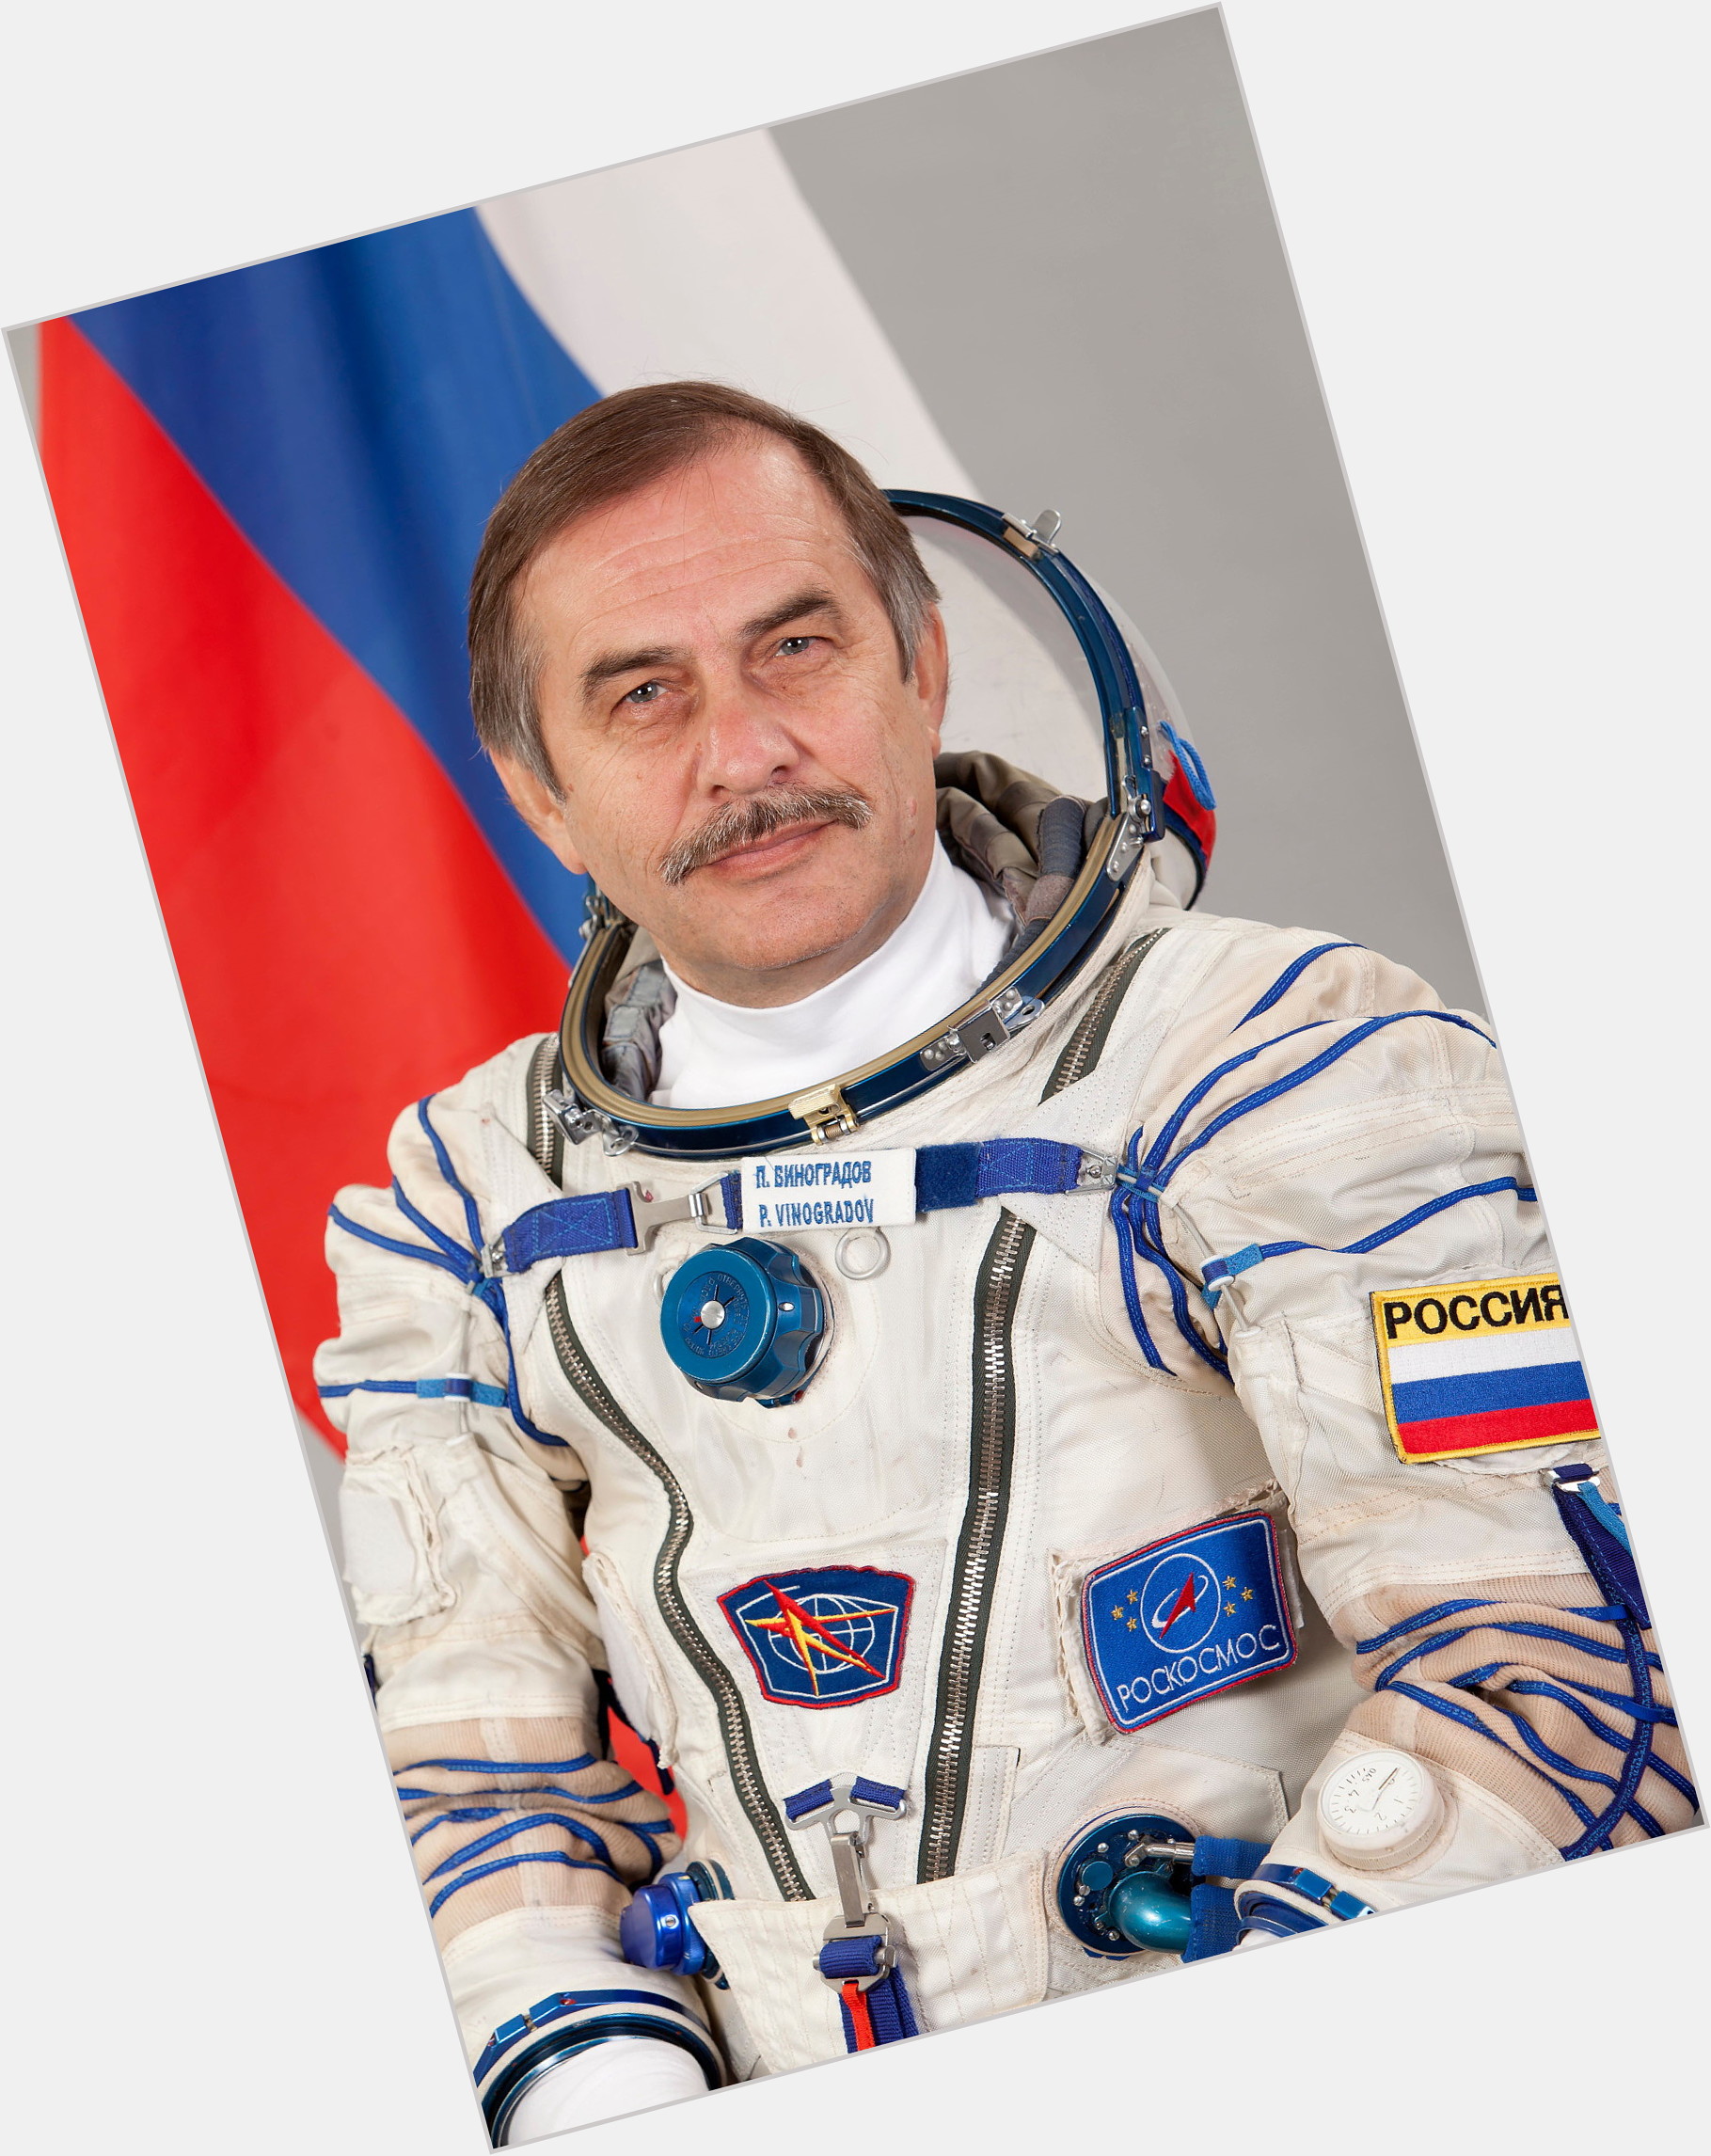 Pavel Vinogradov birthday 2015